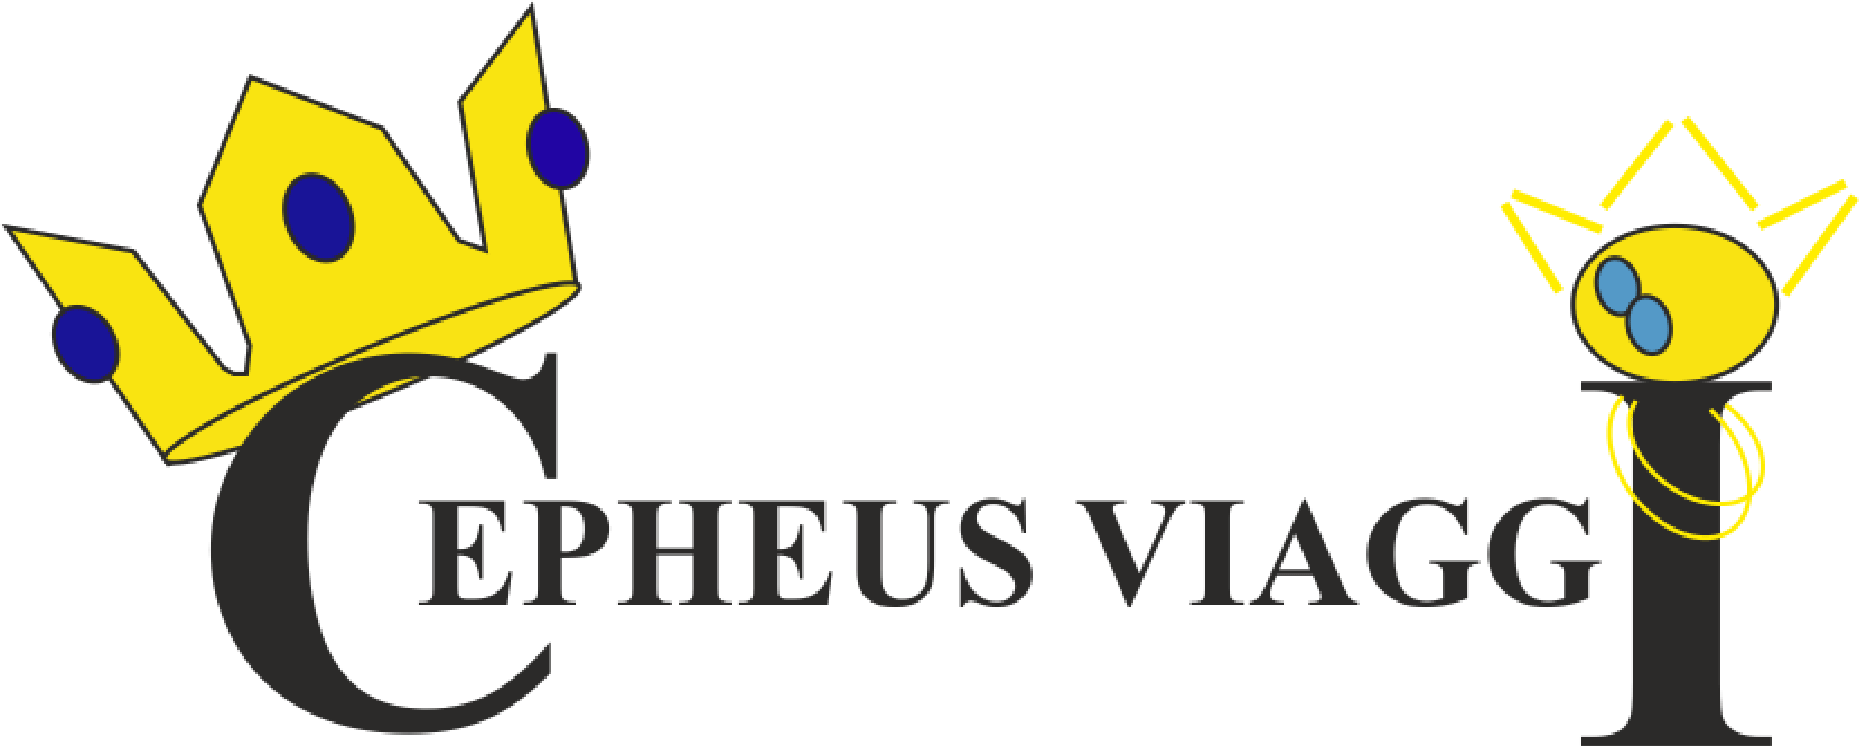 Cepheus Viaggi